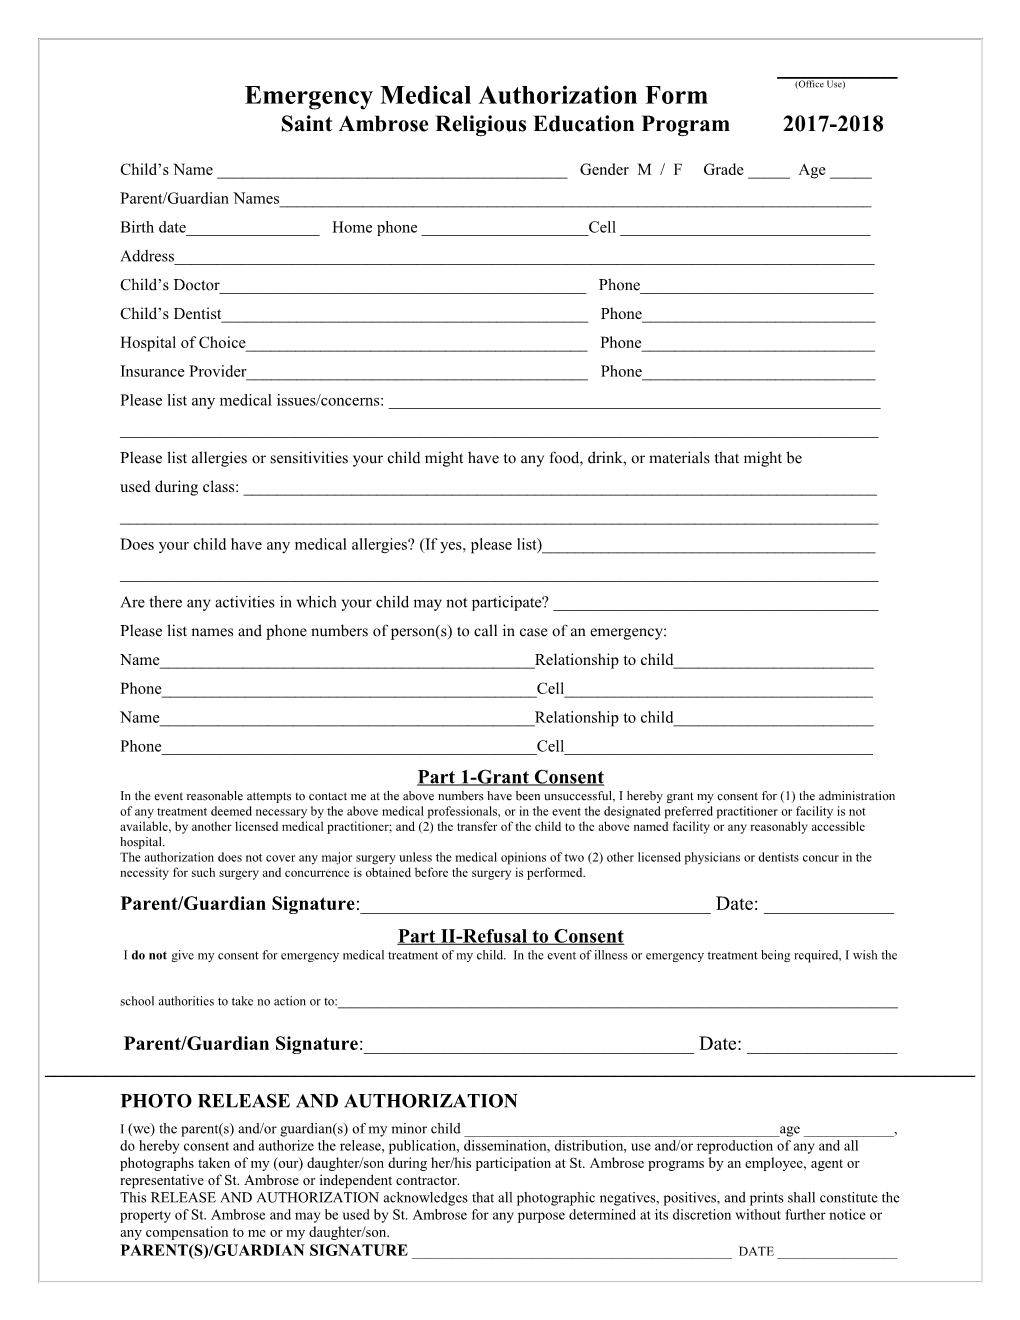 Emergency Medical Authorization Form